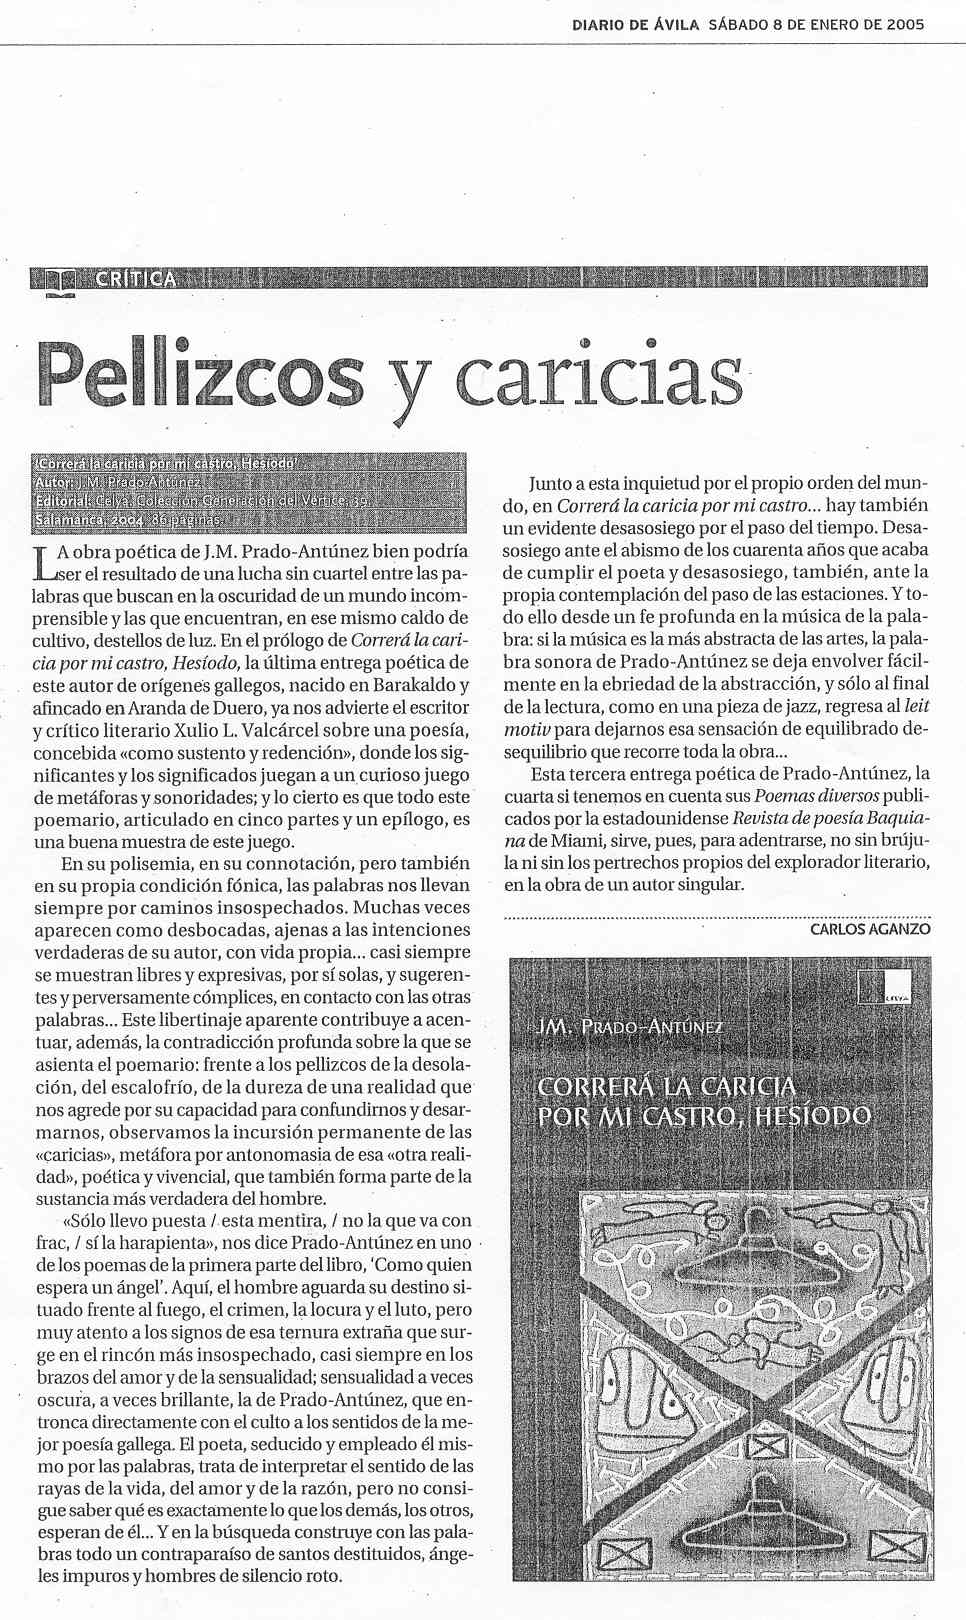 DIARIO DE ÁVILA: CORRERÁ LA CARICIA POR MI CASTRO, HESÍODO, de JM. Prado-Antúnez, por Carlos Aganzo.